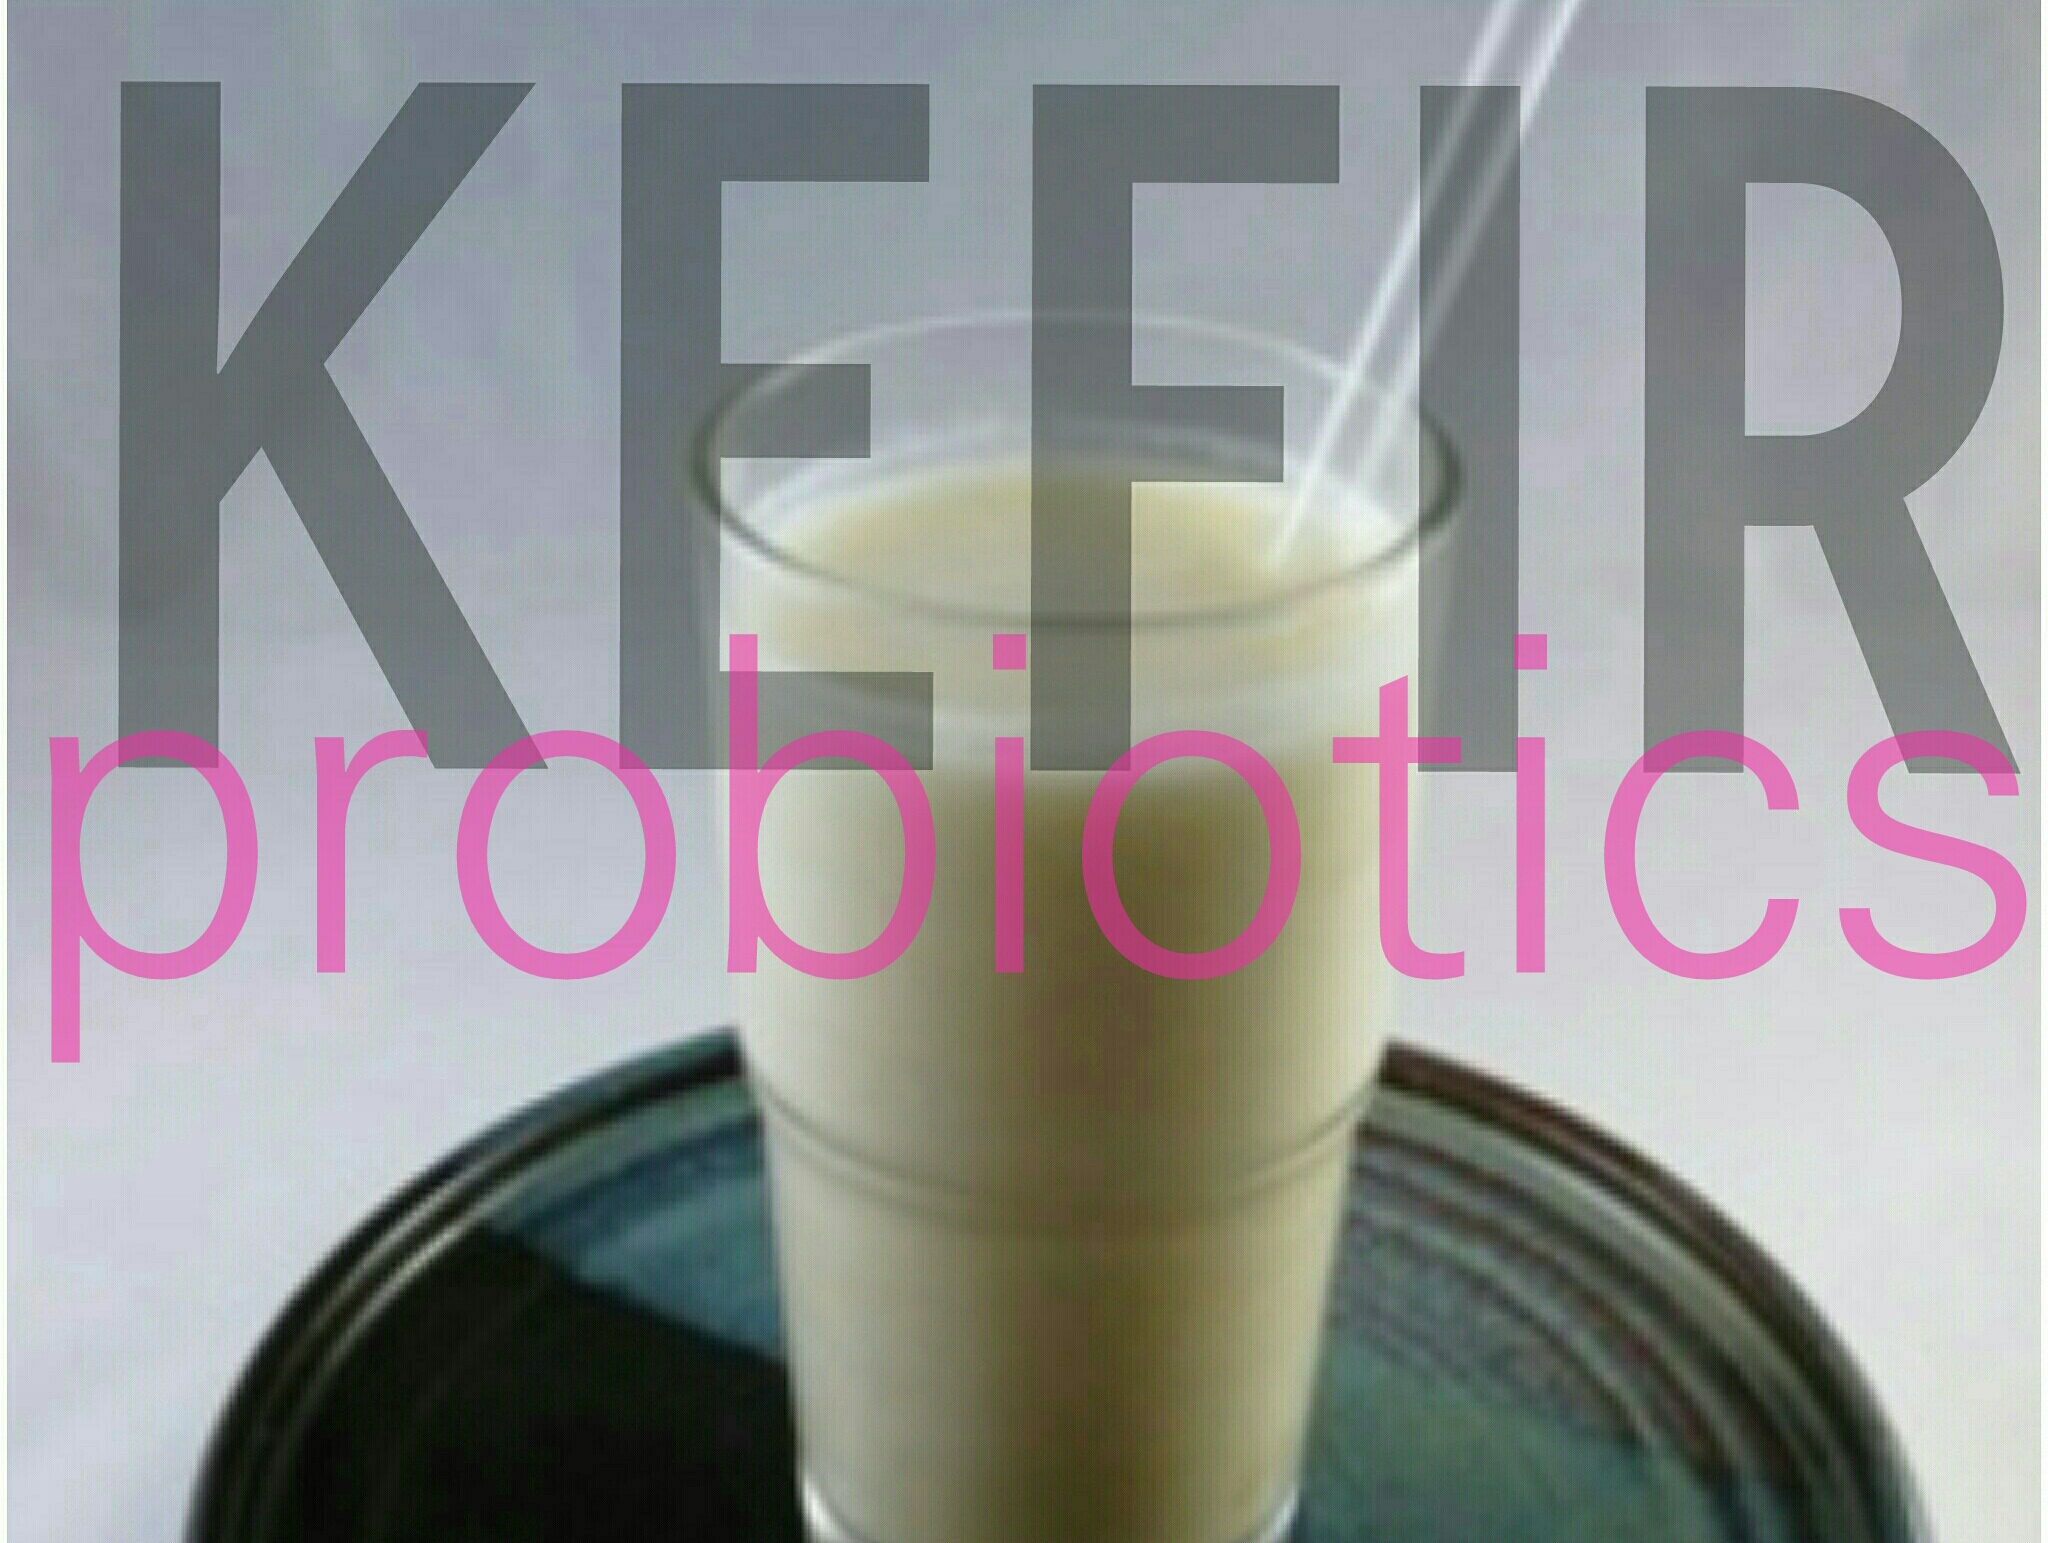 Kefir and Probiotics